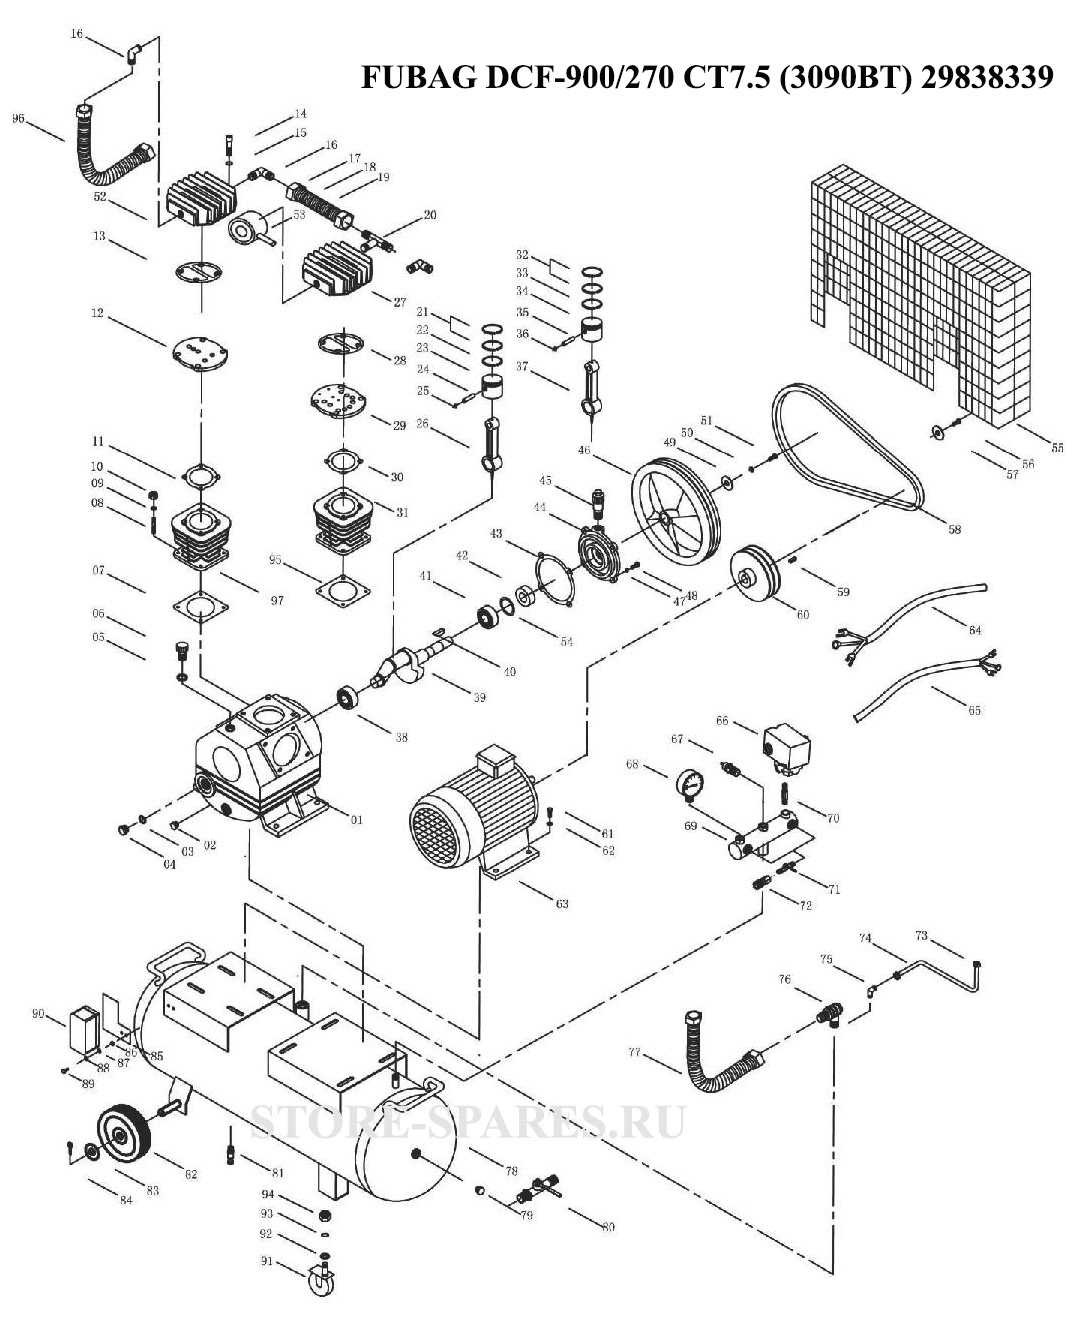 Нажмите чтобы посмотреть схему компрессора FUBAG DCF-900/270 CT7.5 (3090BT) 29838339